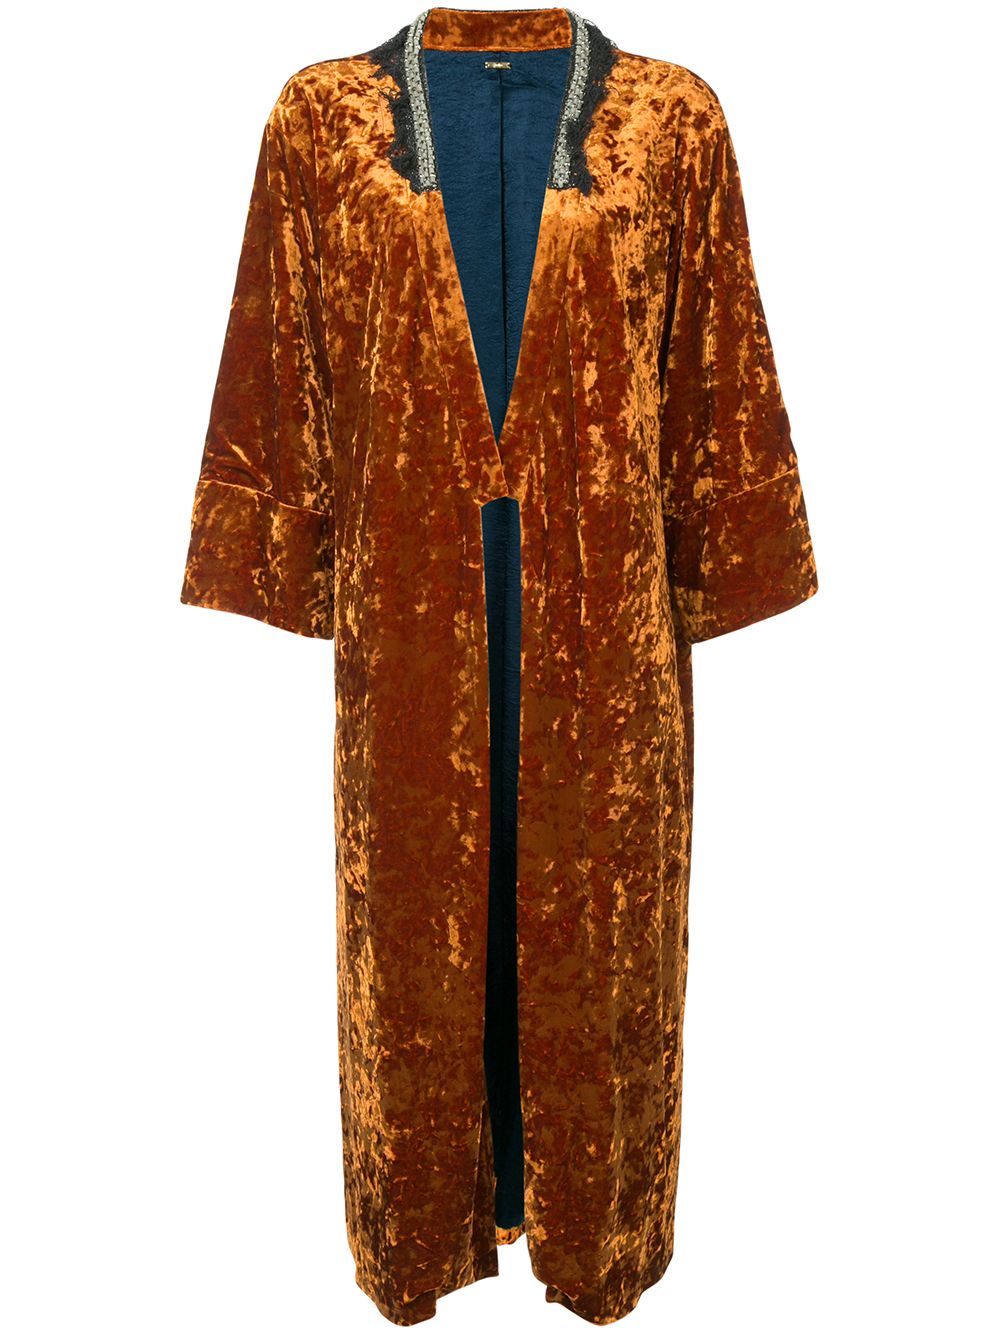 фото Muller of yoshiokubo бархатное пальто кроя кимоно